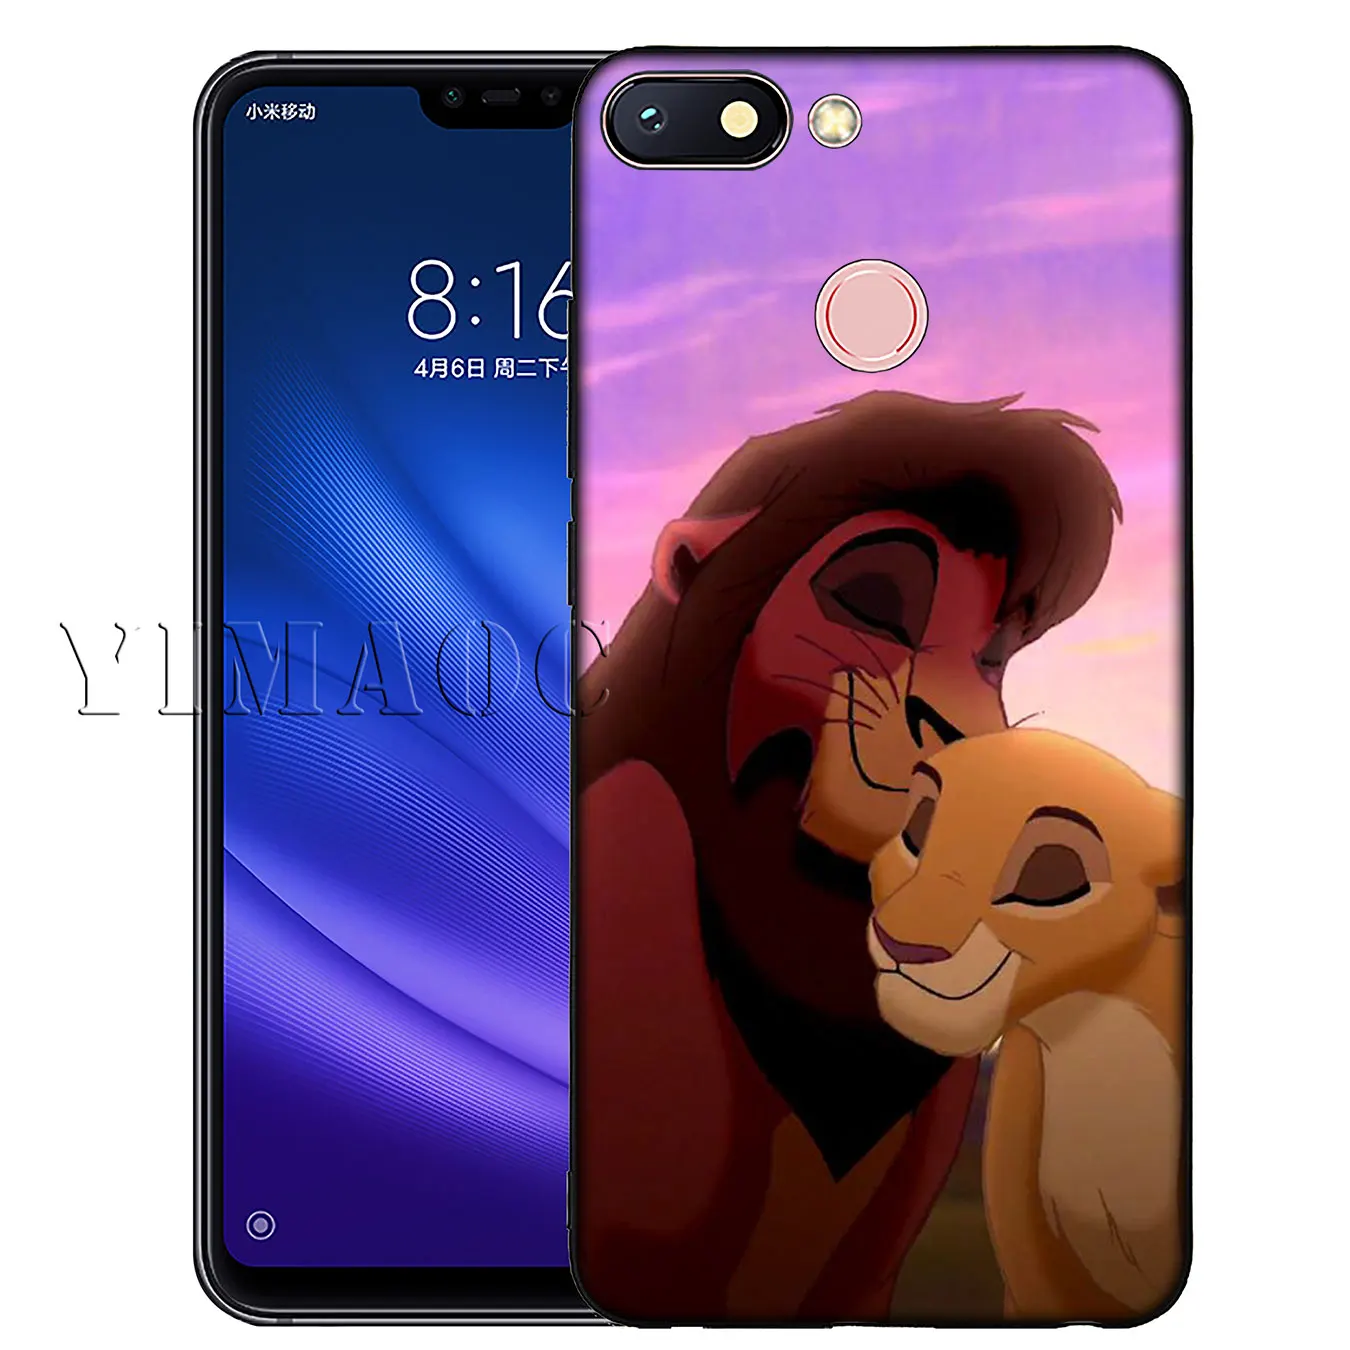 Мягкий силиконовый чехол для телефона YIMAOC с изображением Льва, короля поросенка, кота для Xiaomi Redmi K20 6A 7A Note 8 7 5 6 Pro Plus, черный чехол из ТПУ - Цвет: 3